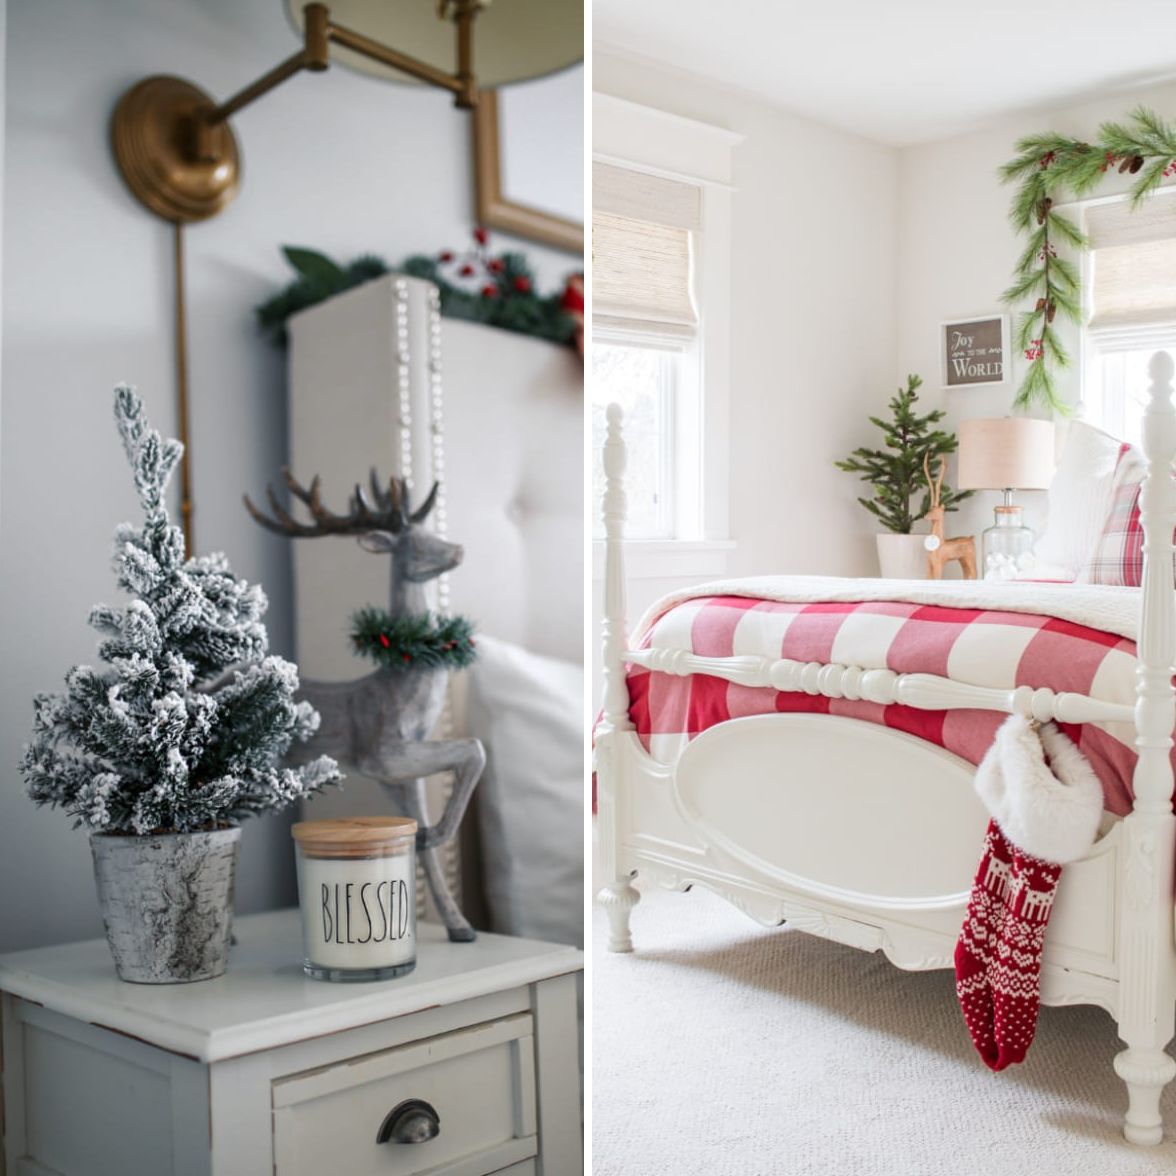 聖誕節；居家裝飾；聖誕布置；客廳；餐桌；臥室；聖誕樹；聖誕襪;黃勻薔